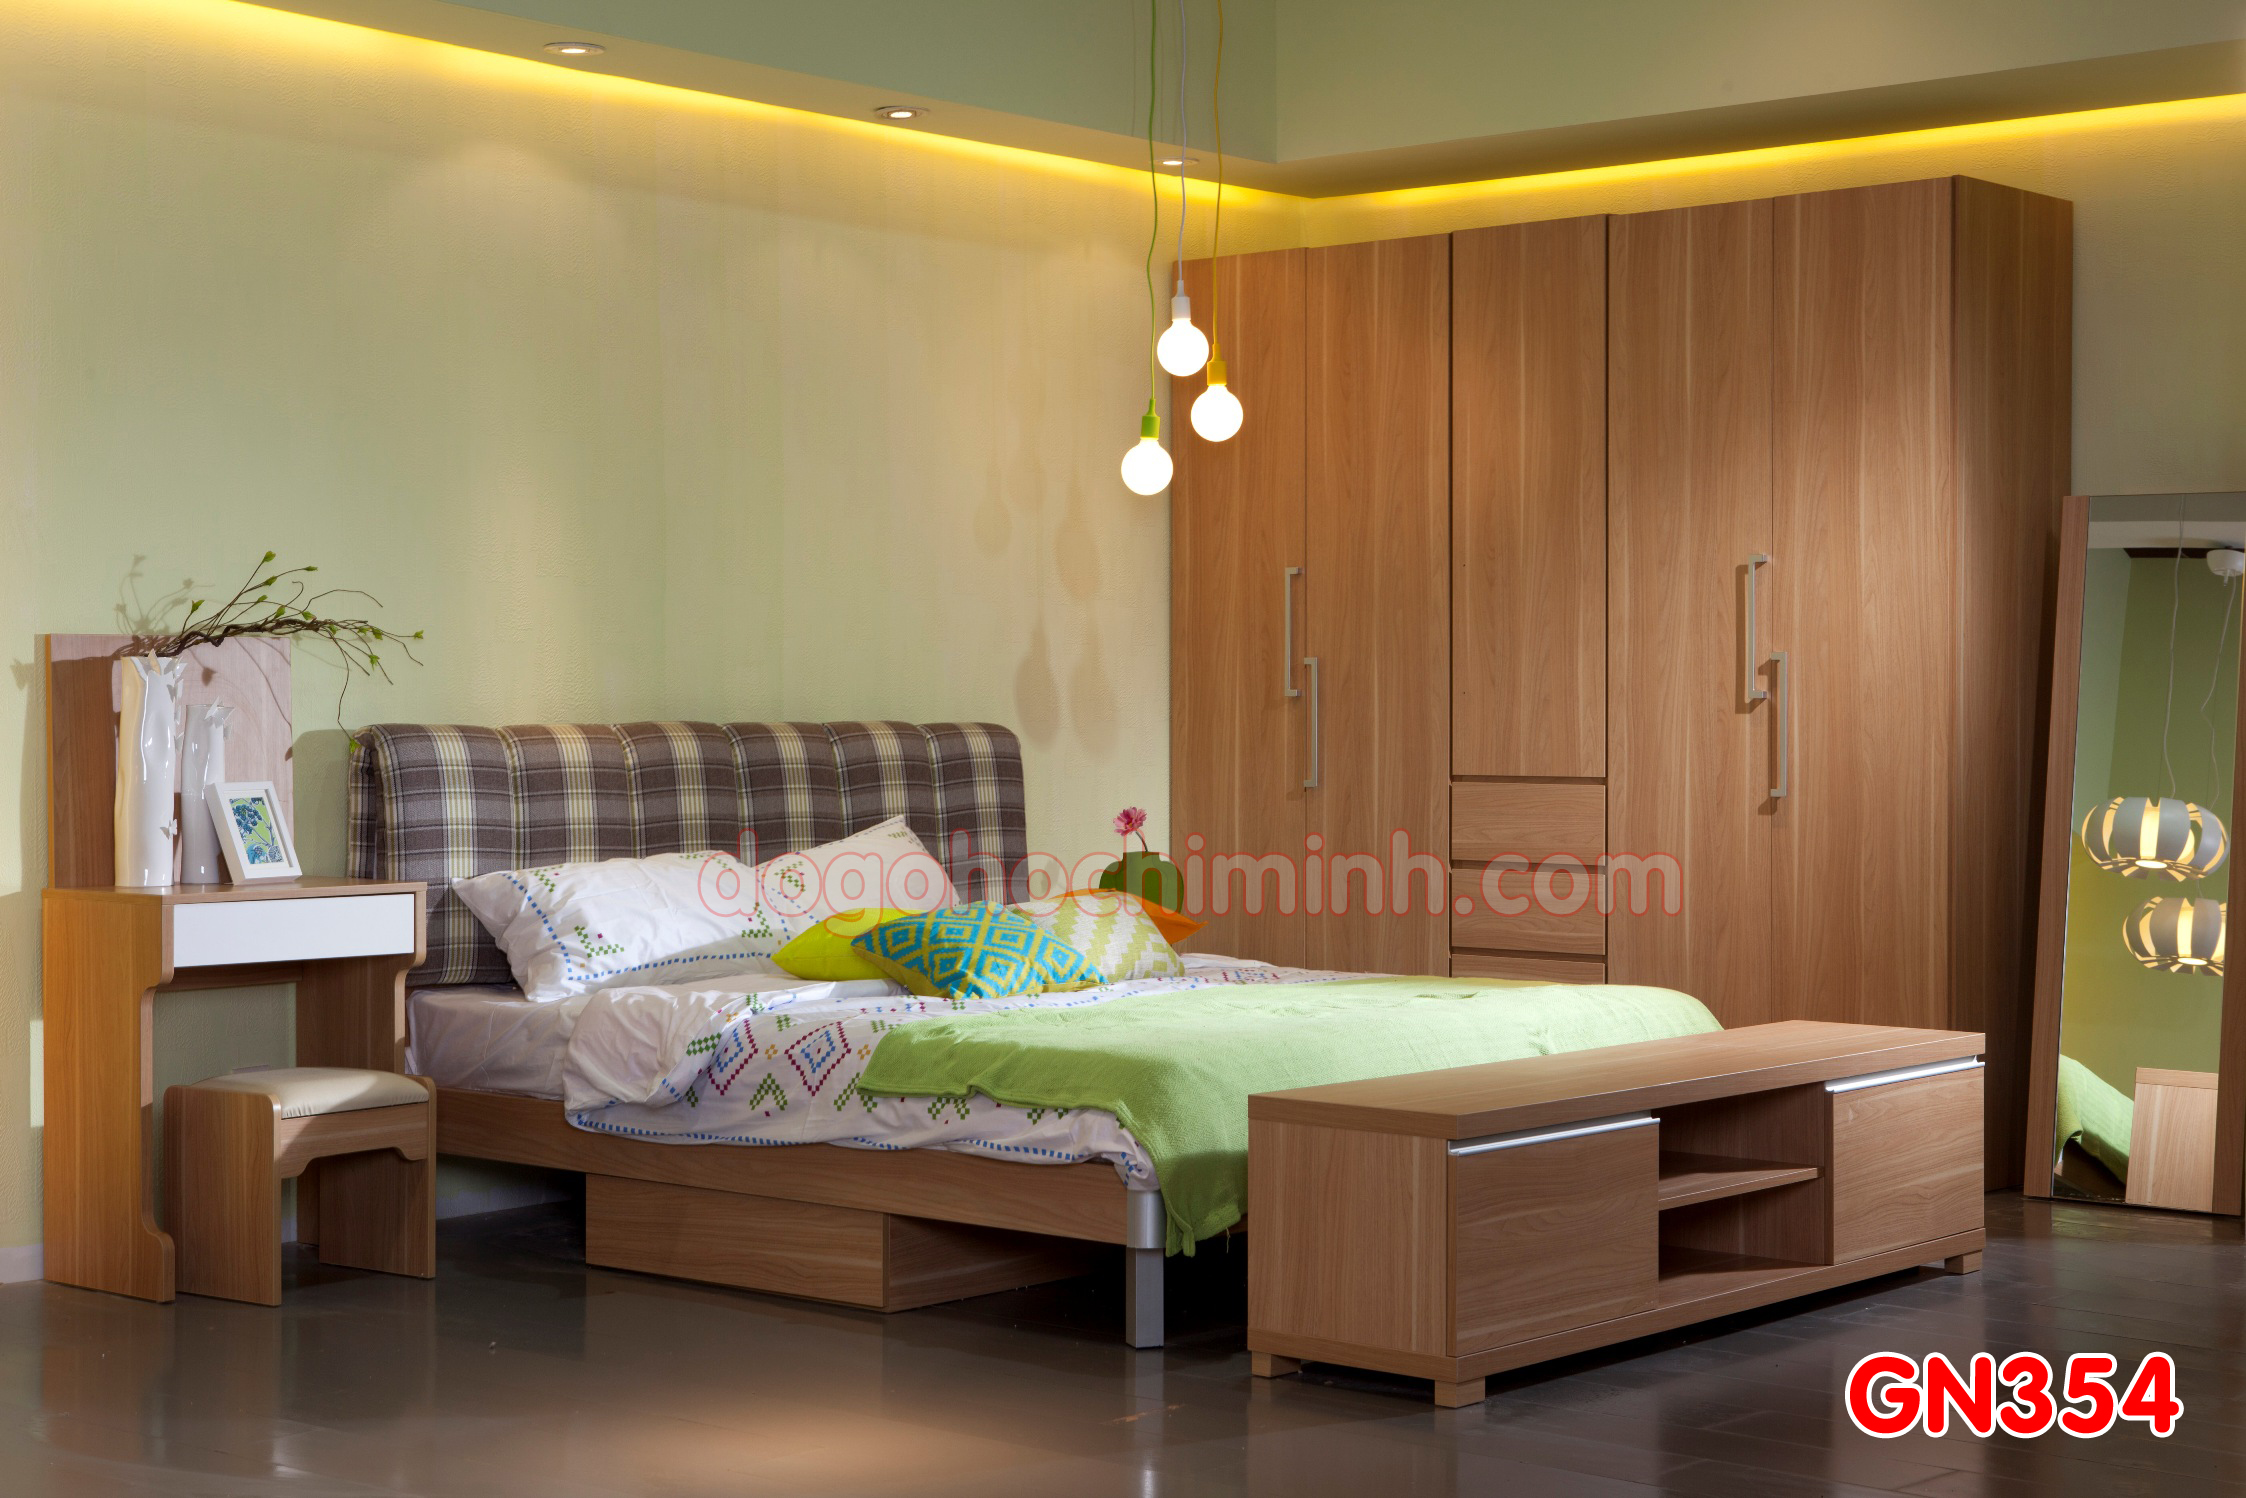 Giường ngủ gỗ đẹp cao cấp giá rẻ GN354